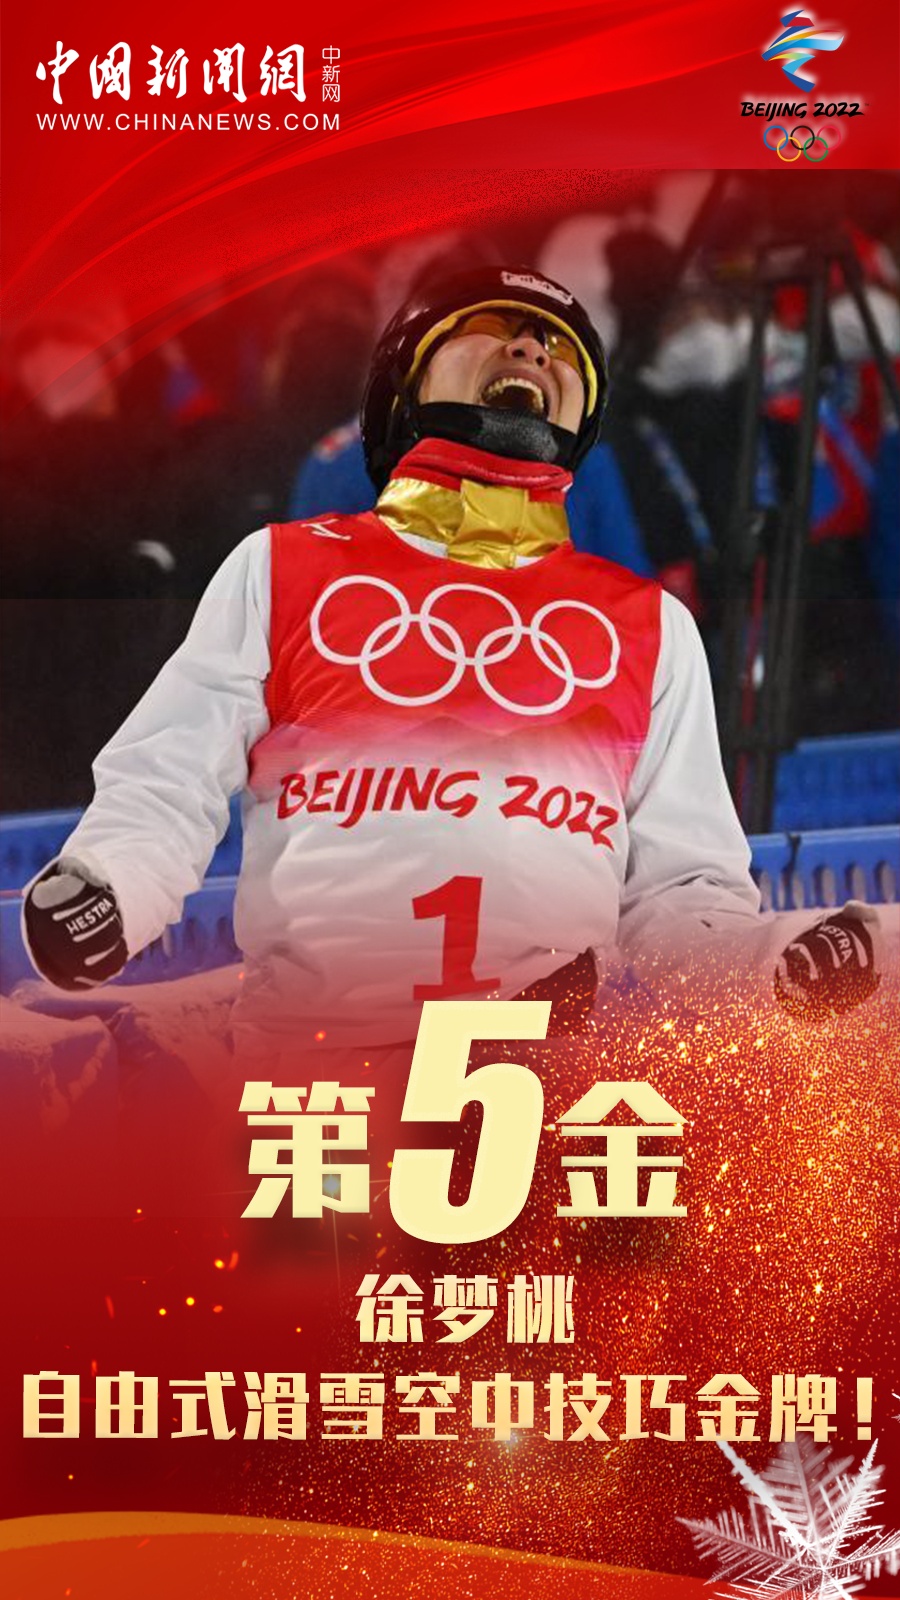 从温哥华冬奥会上的亮相,到在北京登上最高领奖台,这枚冬奥金牌